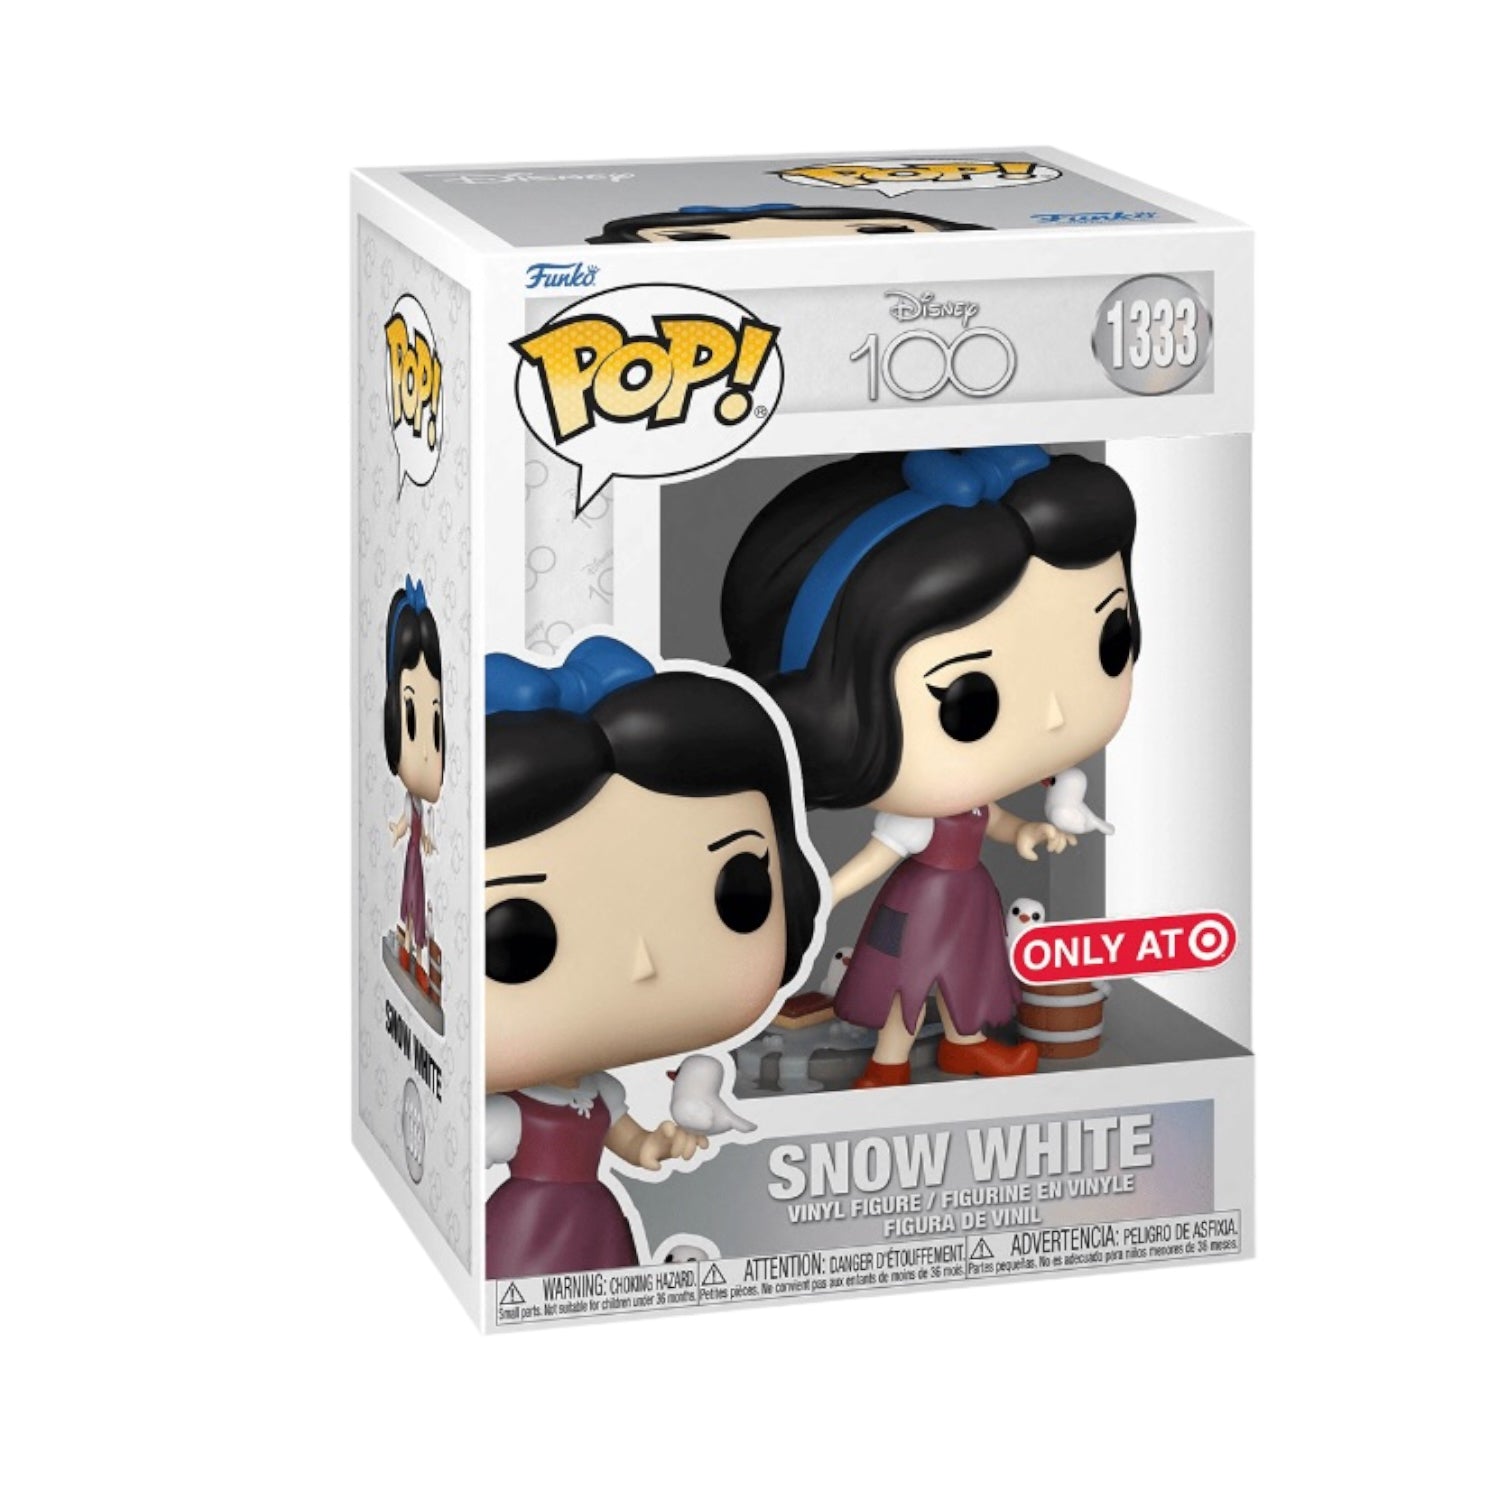 Snow White #1333 Funko Pop! - Disney 100 - Target Exclusive